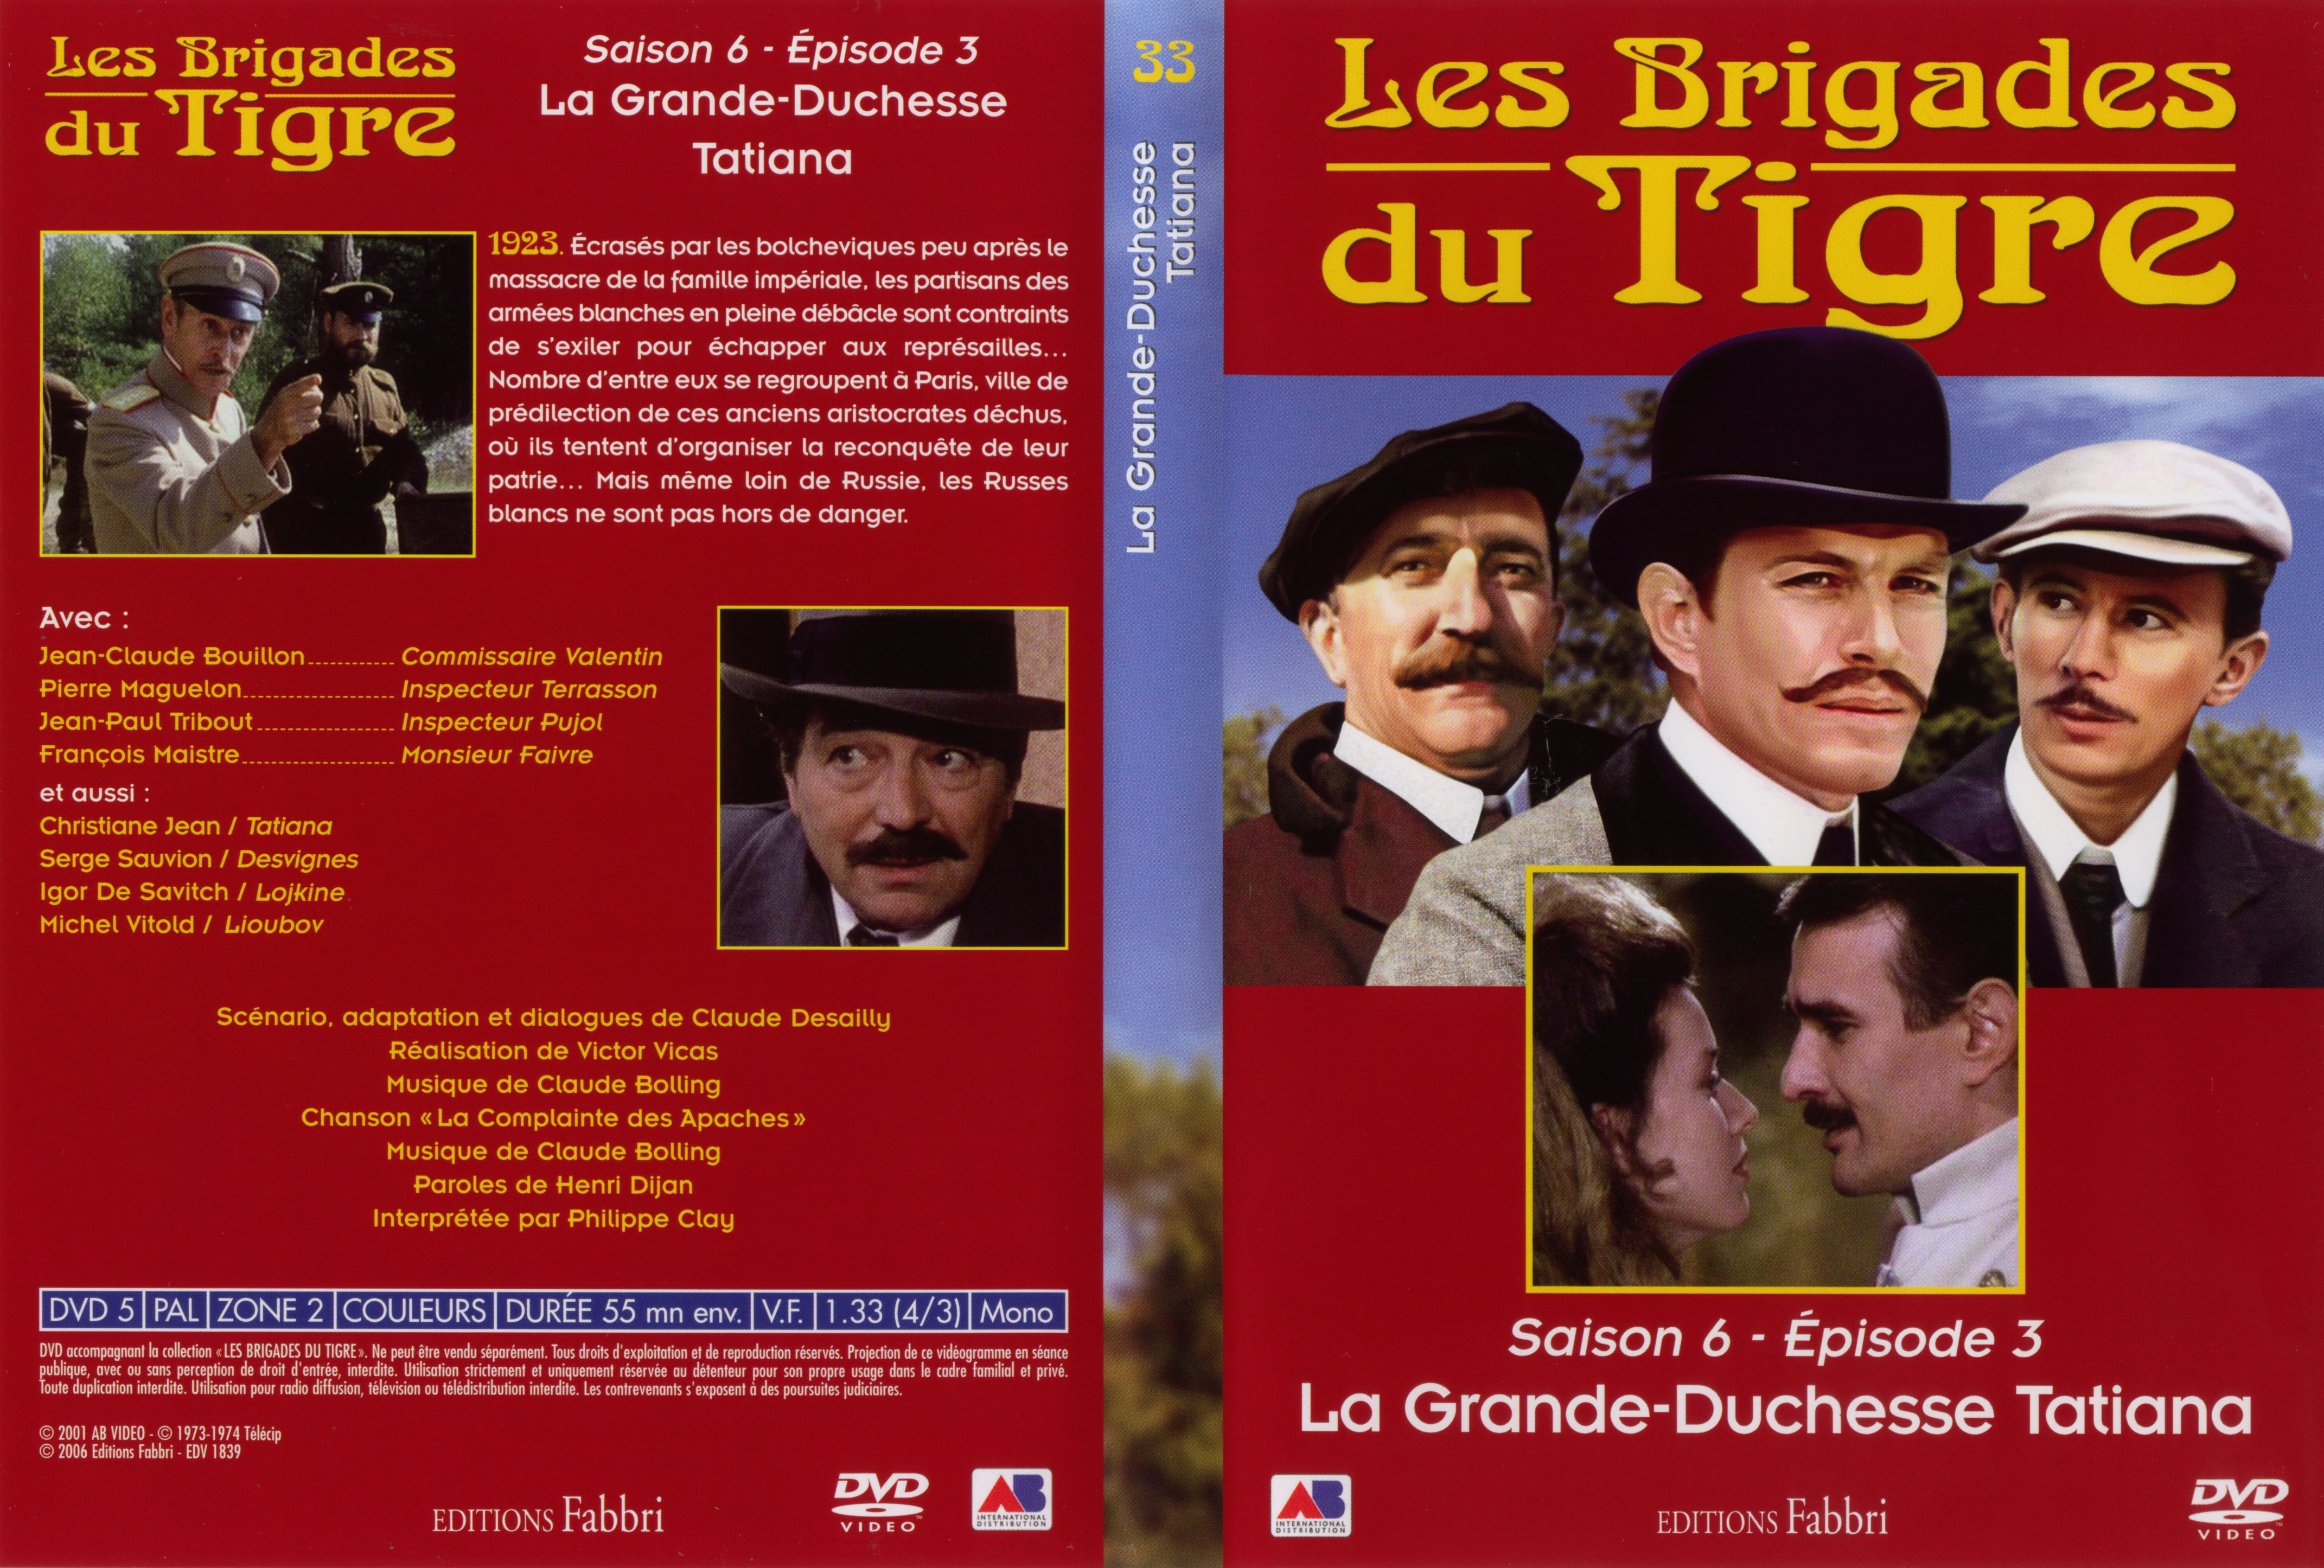 Jaquette DVD Les brigades du tigre saison 6 pisode 3